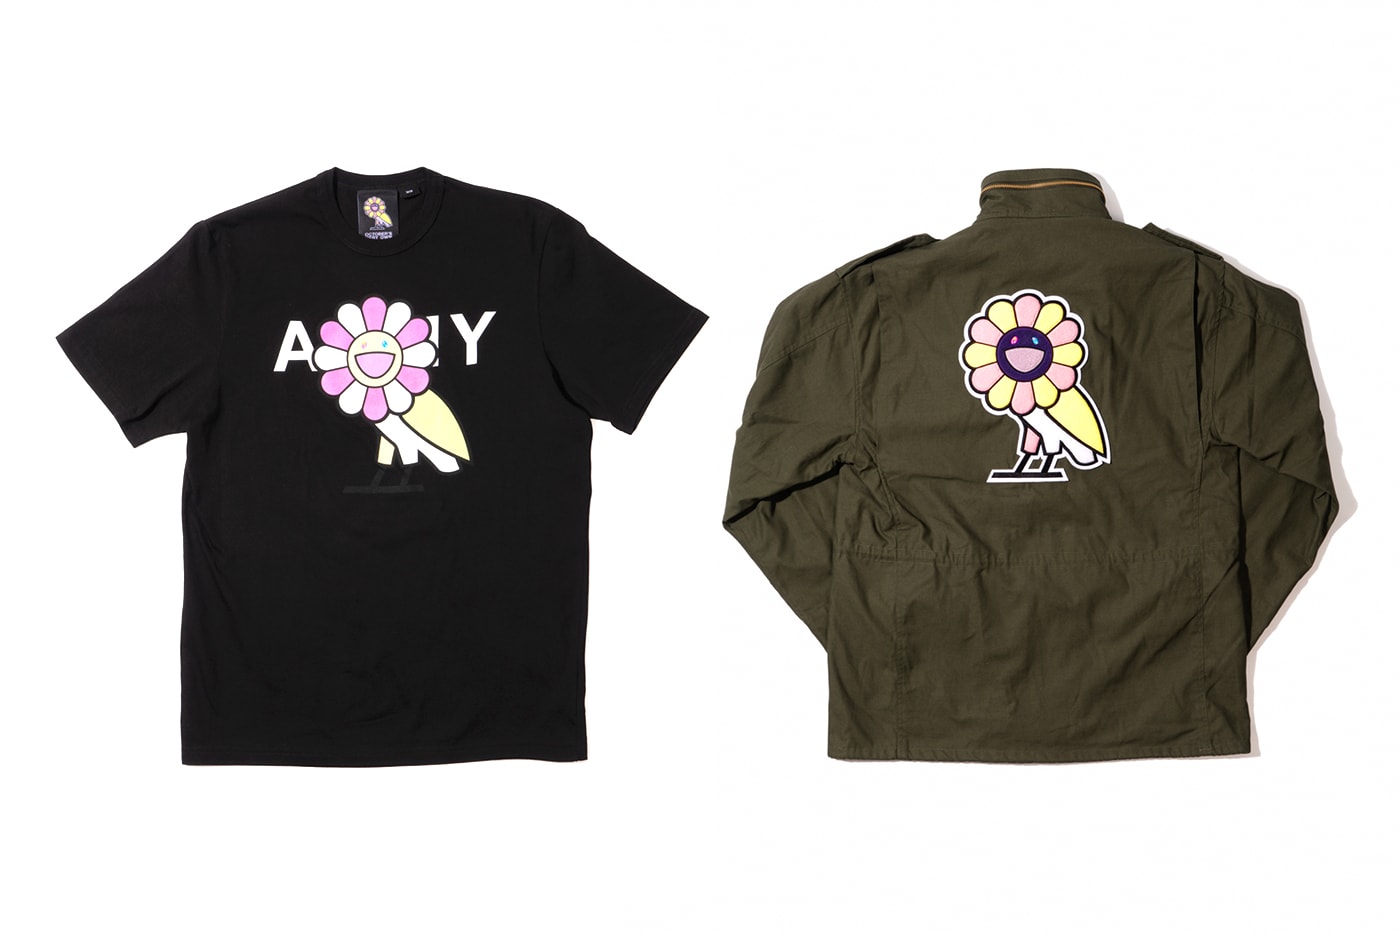 ドレイク Drake 主宰の OVO と村上隆がコラボコレクション第2弾 “Surplus”がリリース Takashi Murakami & OVO Announce "Surplus" Collection m65 hoodies drizzy drake Canada Japan KaiKai KiKi shirts fashion collaborations 